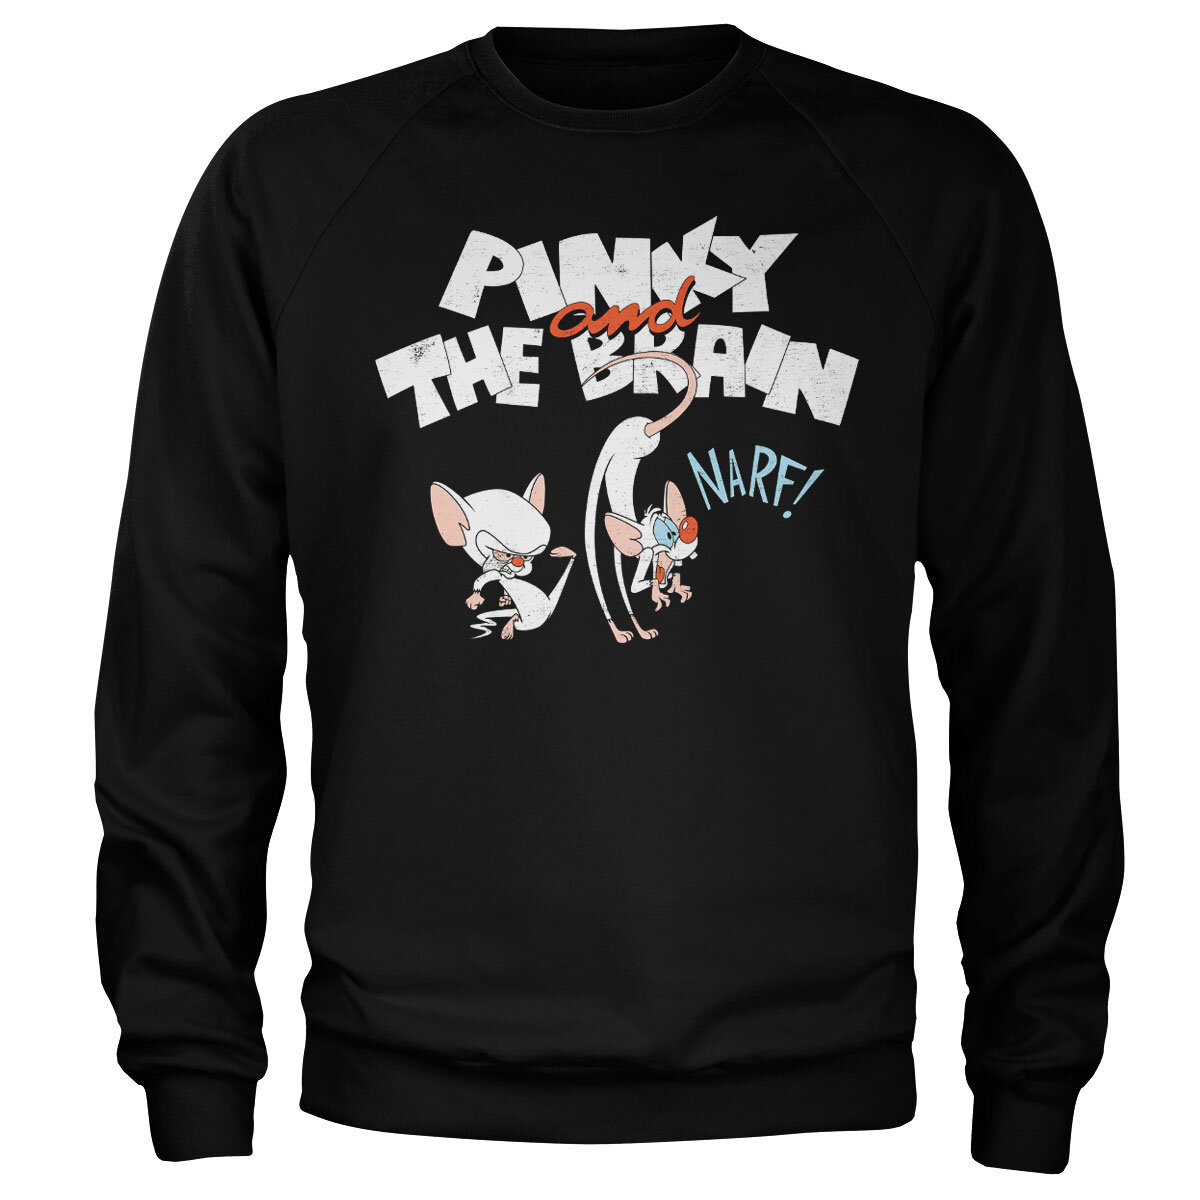 Pinky and The Brain - NARF Sweatshirt